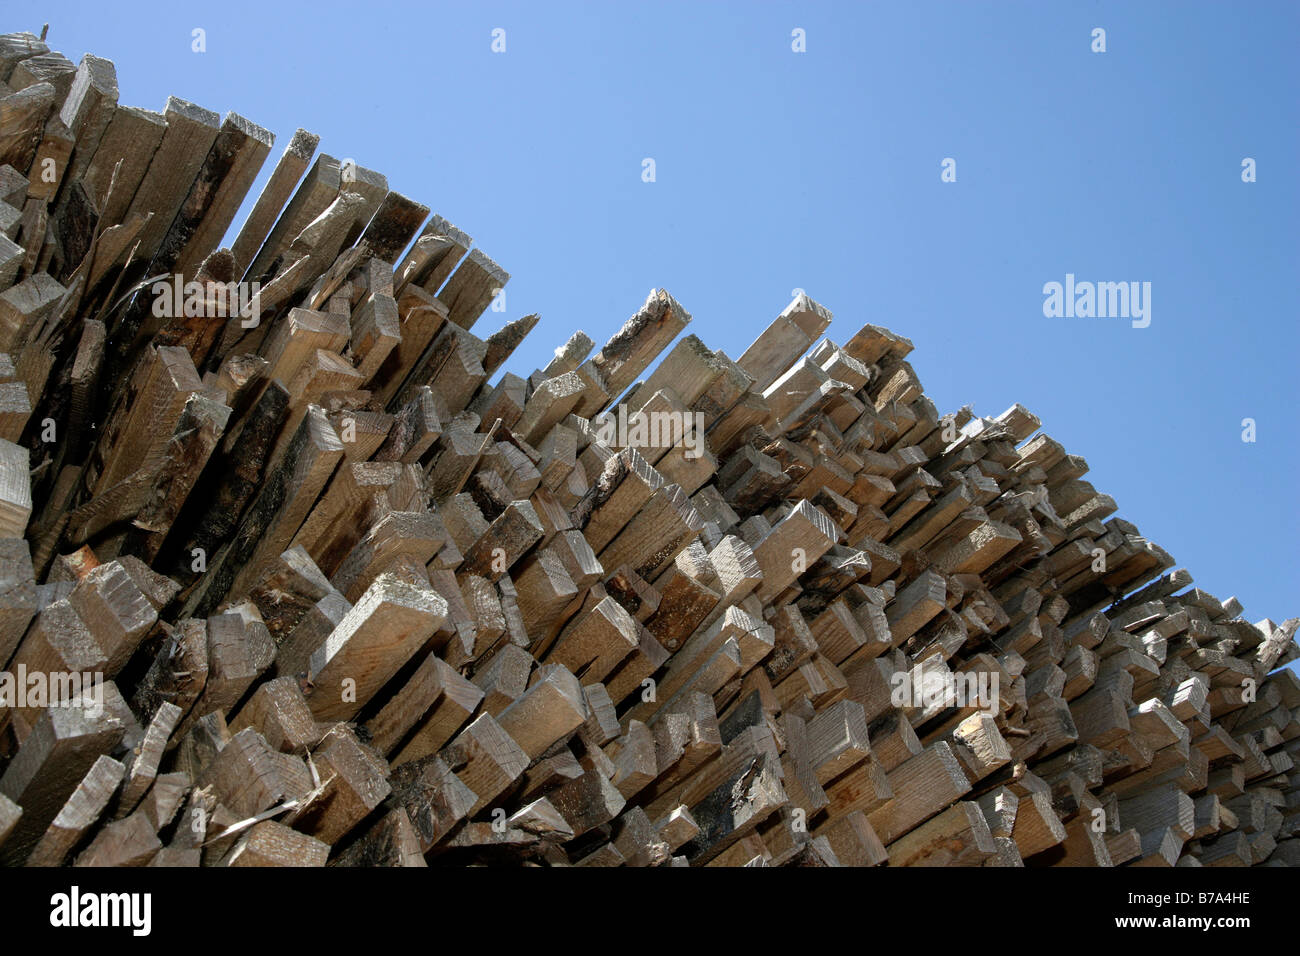 Le bois stocké prêt pour la production de panneaux de particules ou d'aggloméré, à l'usine de production de Pfleiderer AG à Neumarkt, Bavari Banque D'Images